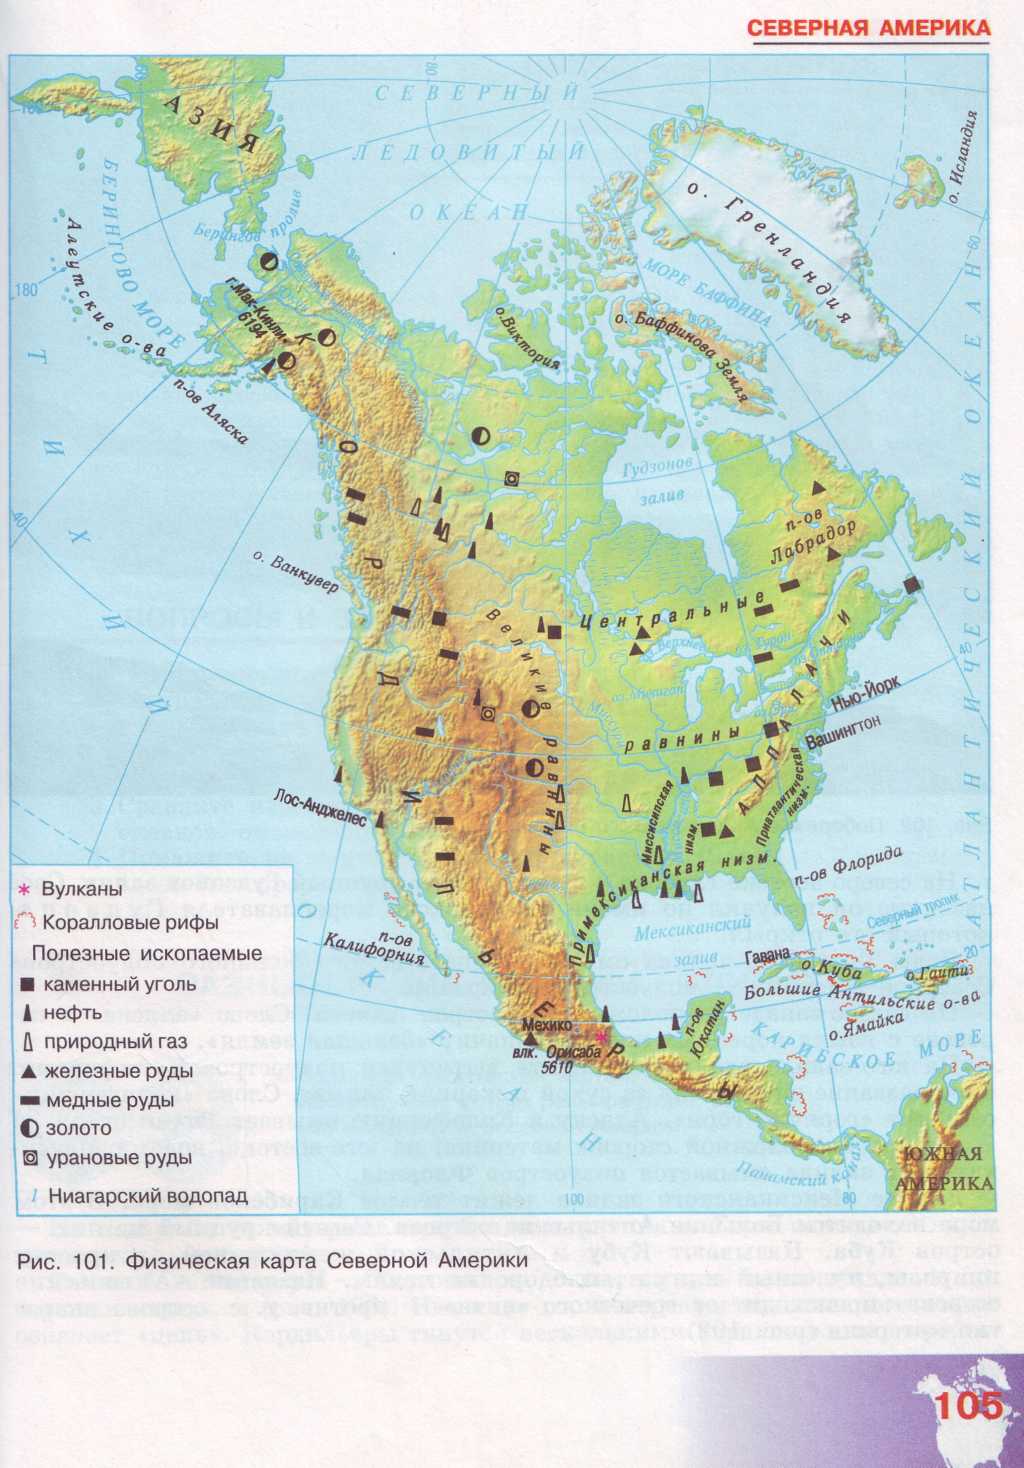 Полезные ископаемые материка северная америка. Месторождения полезных ископаемых Северной Америки. Полезные ископаемые Северной Америки на карте. Полезные ископаемые Северной Америки на контурной карте. Полезные ископаемые Северной Америки на карте с обозначениями.